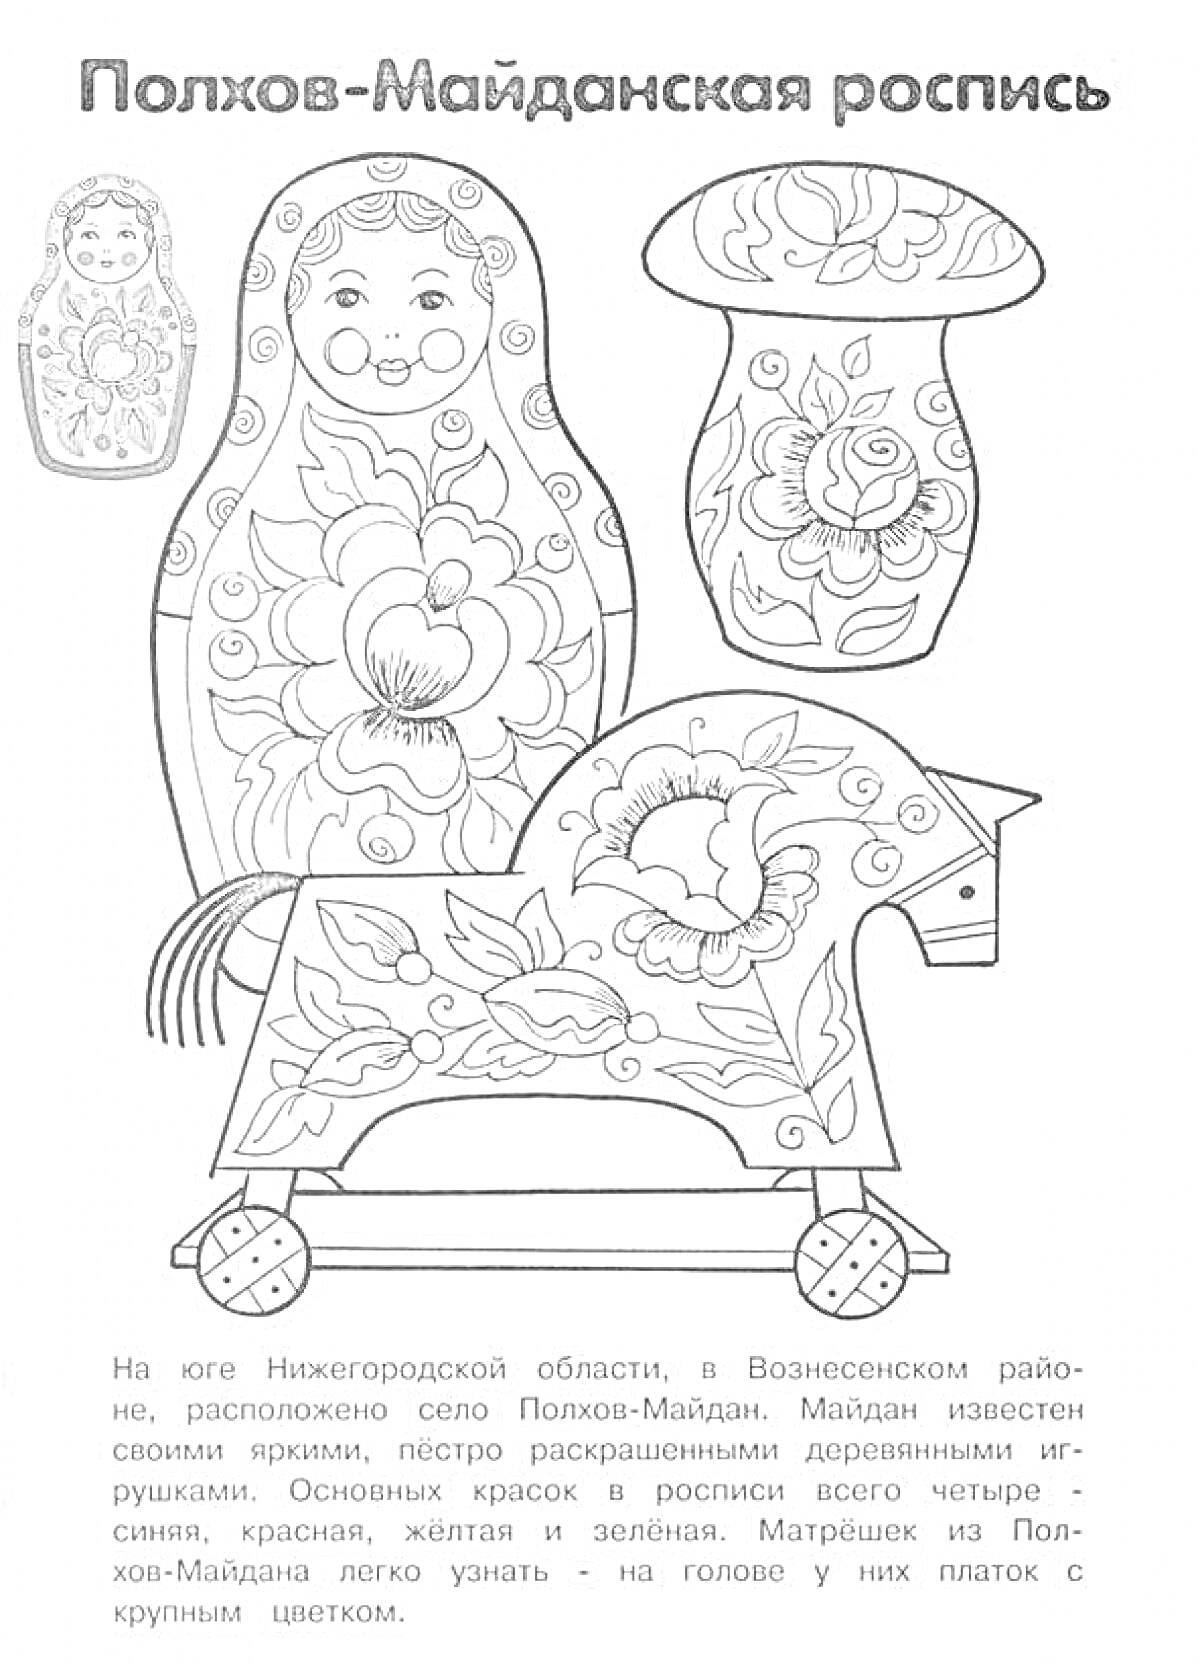 Полхов-Майданская роспись - матрешка с цветами, расписное блюдце, расписная лошадка-каталка.